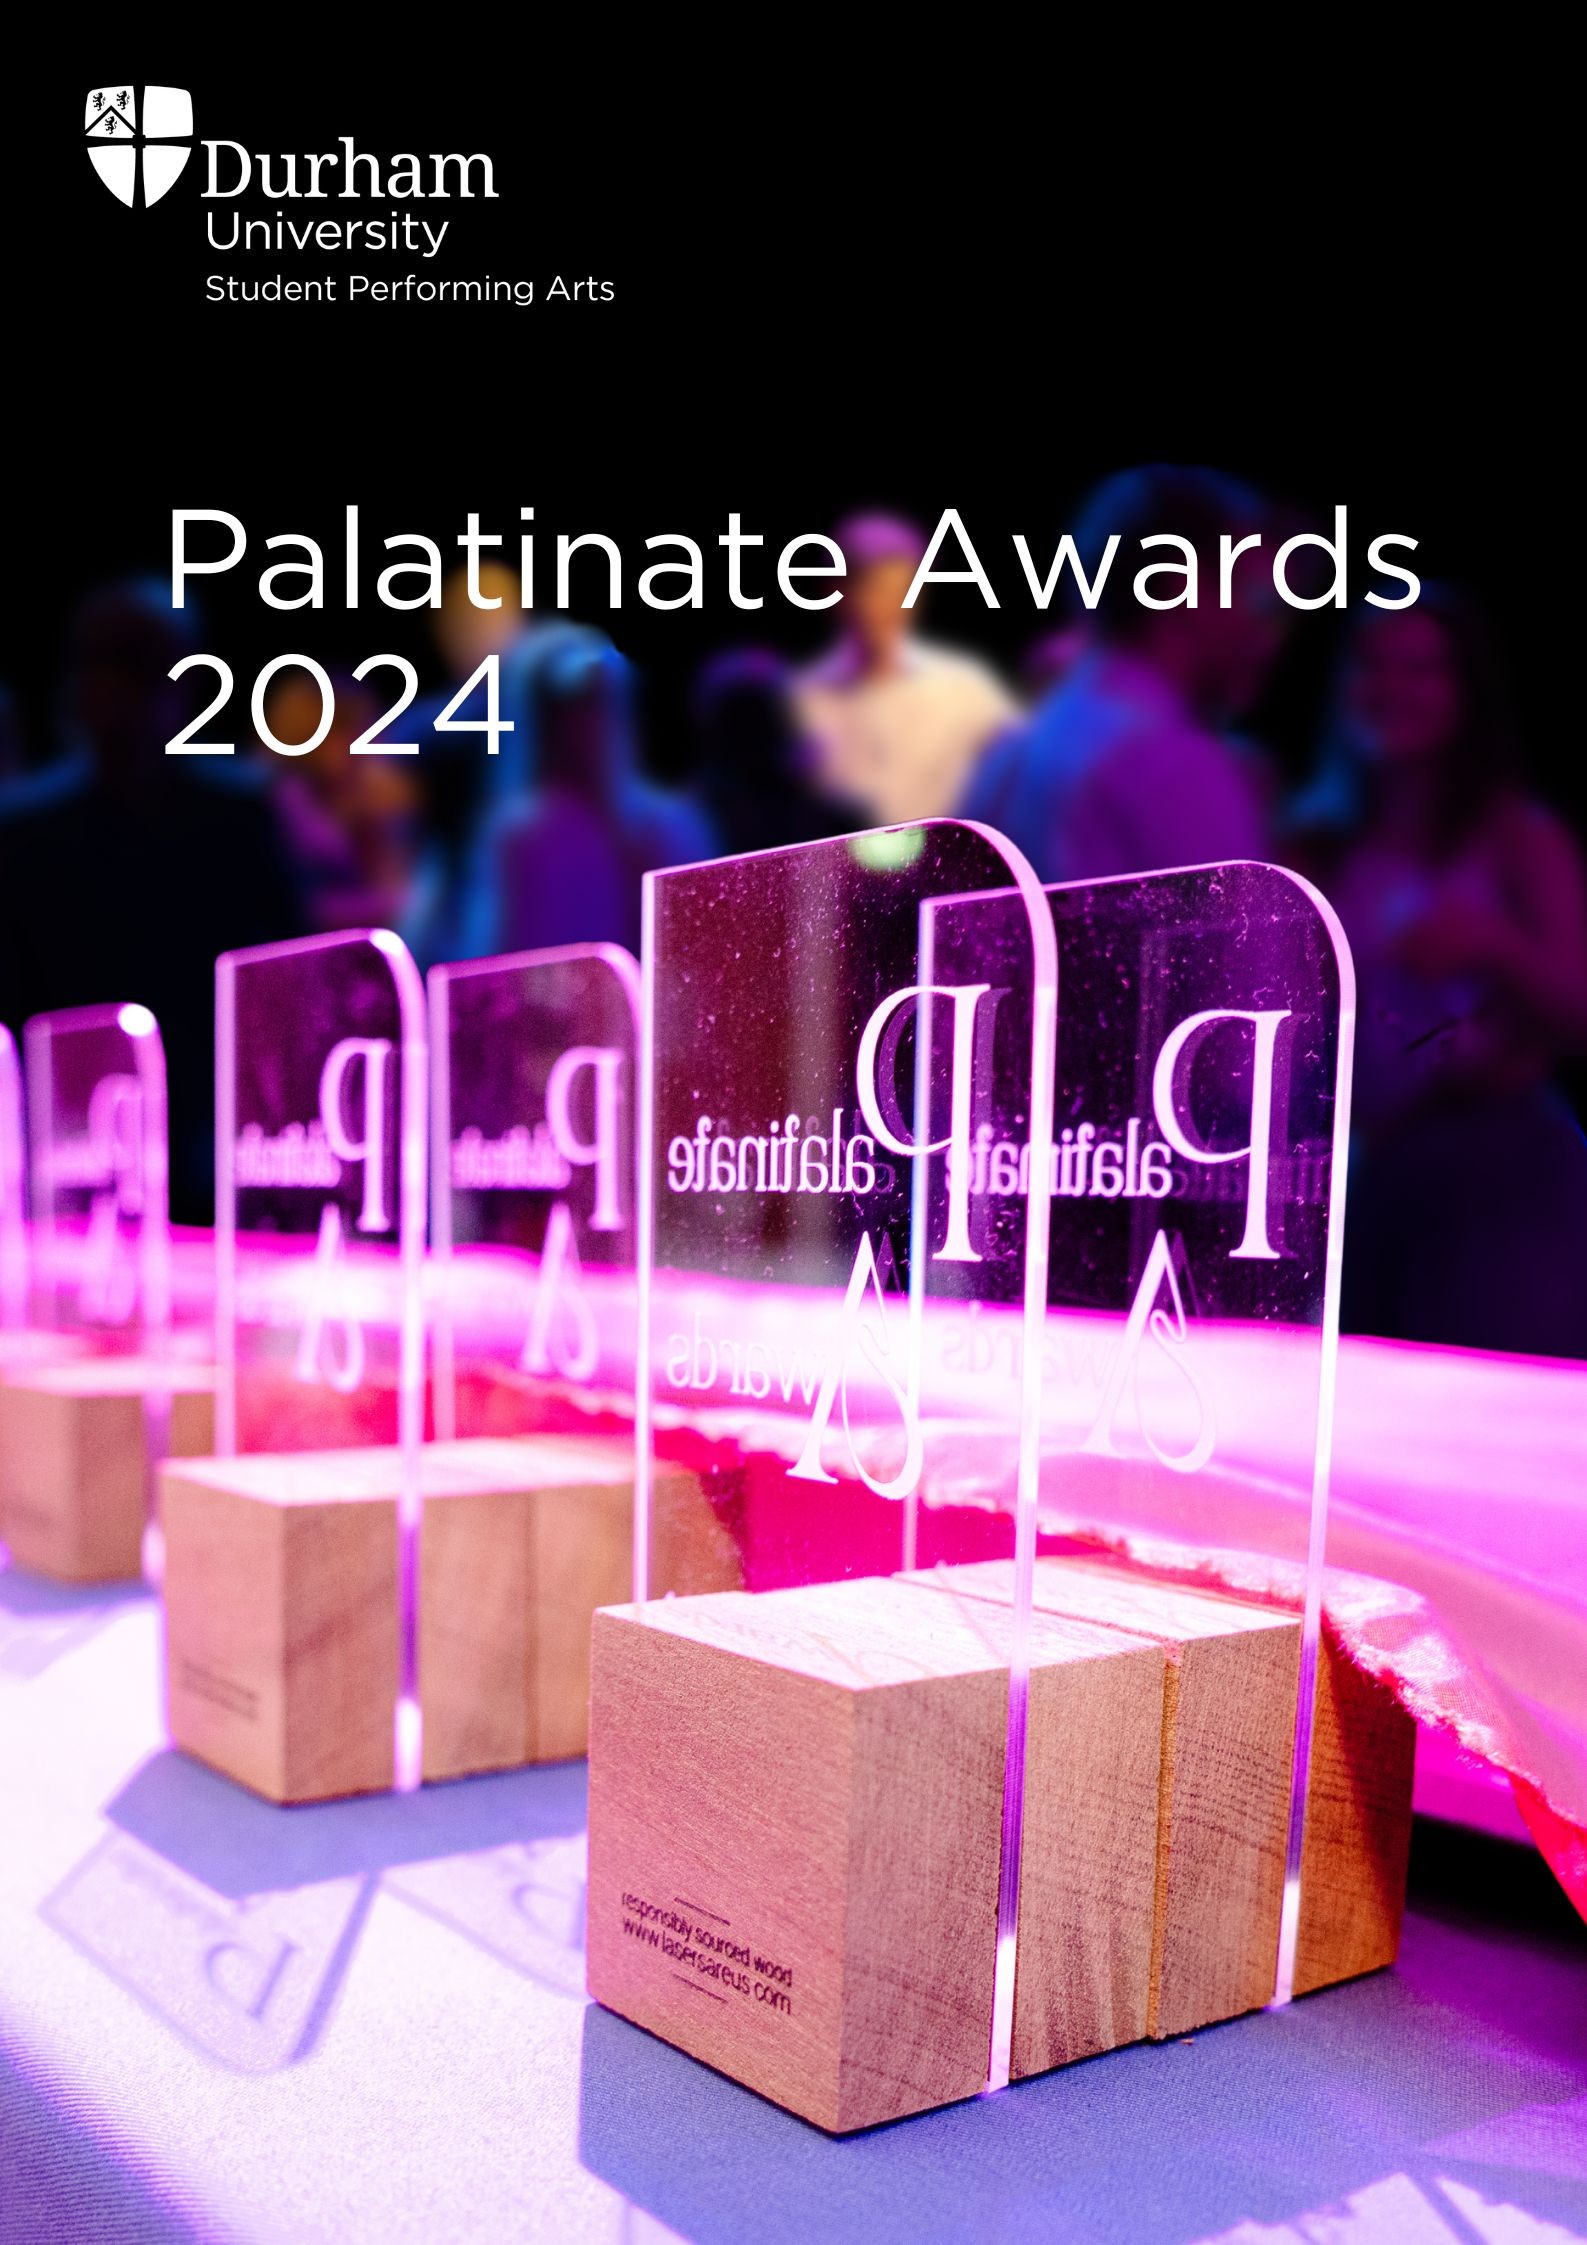 The Palatinate Awards 2024